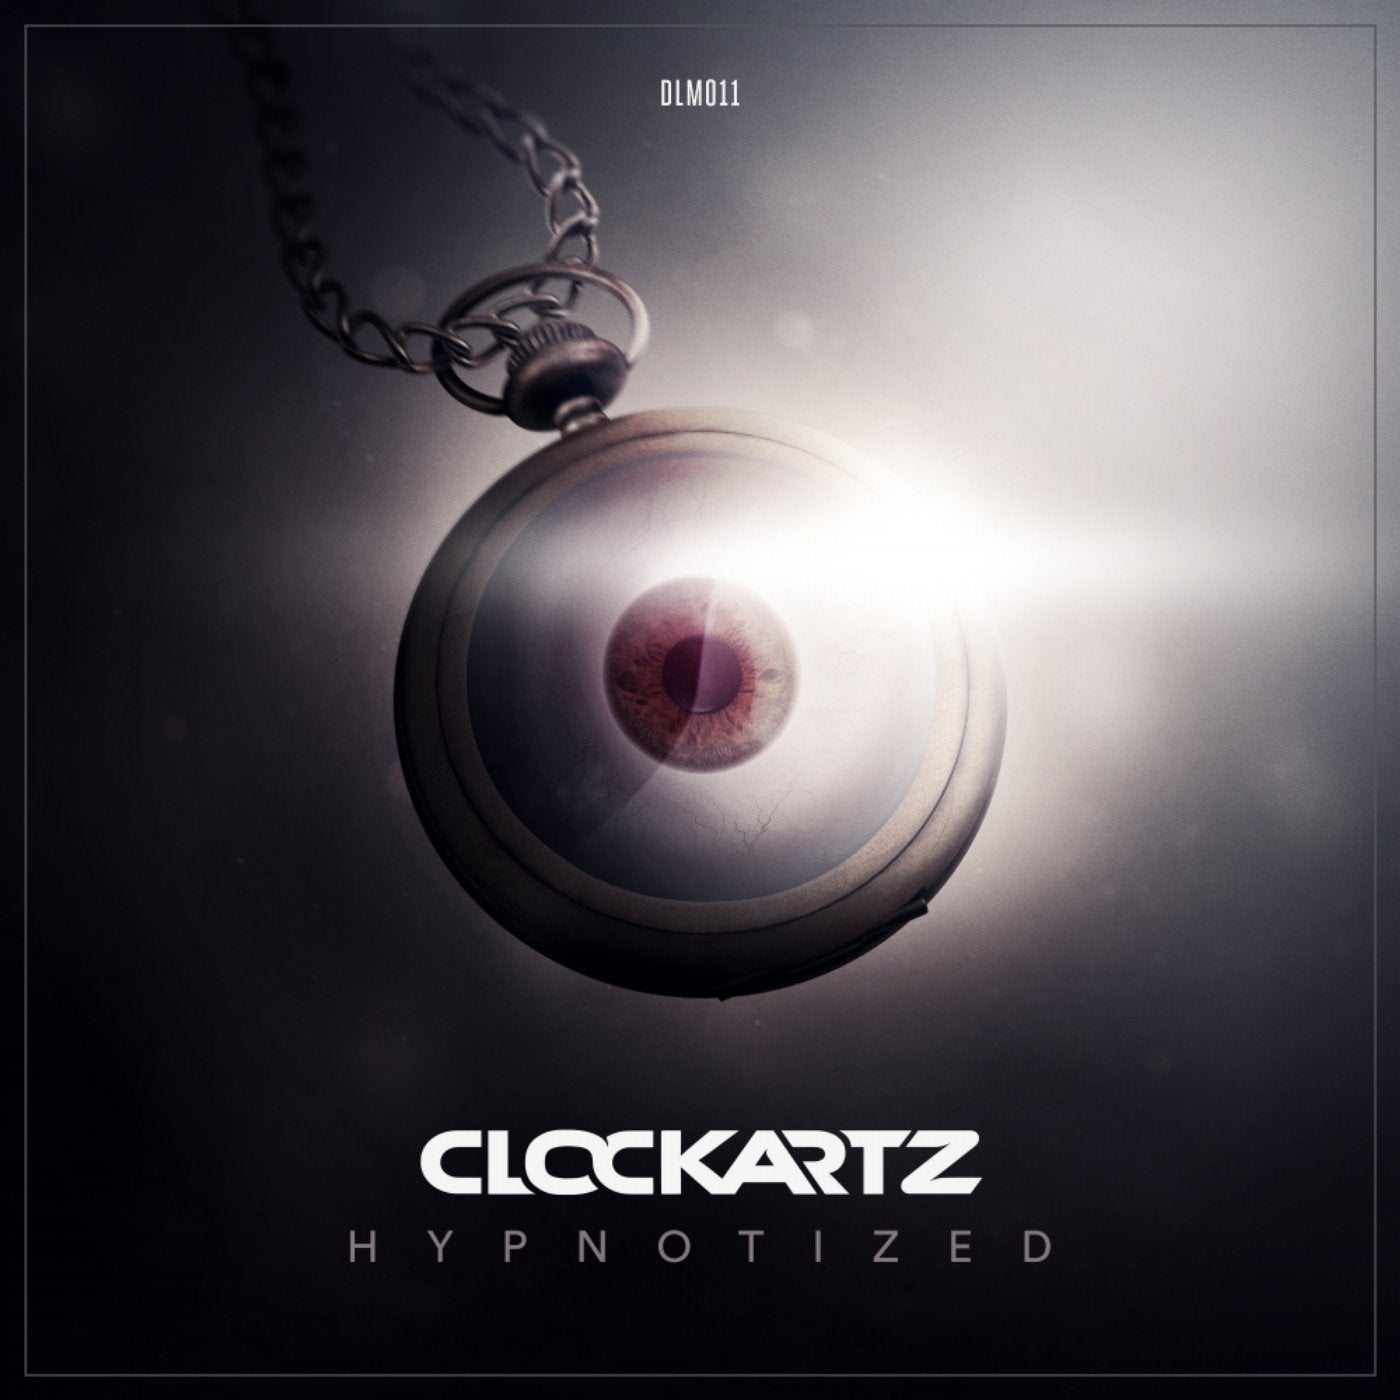 Hypnotized (DJ Mix)